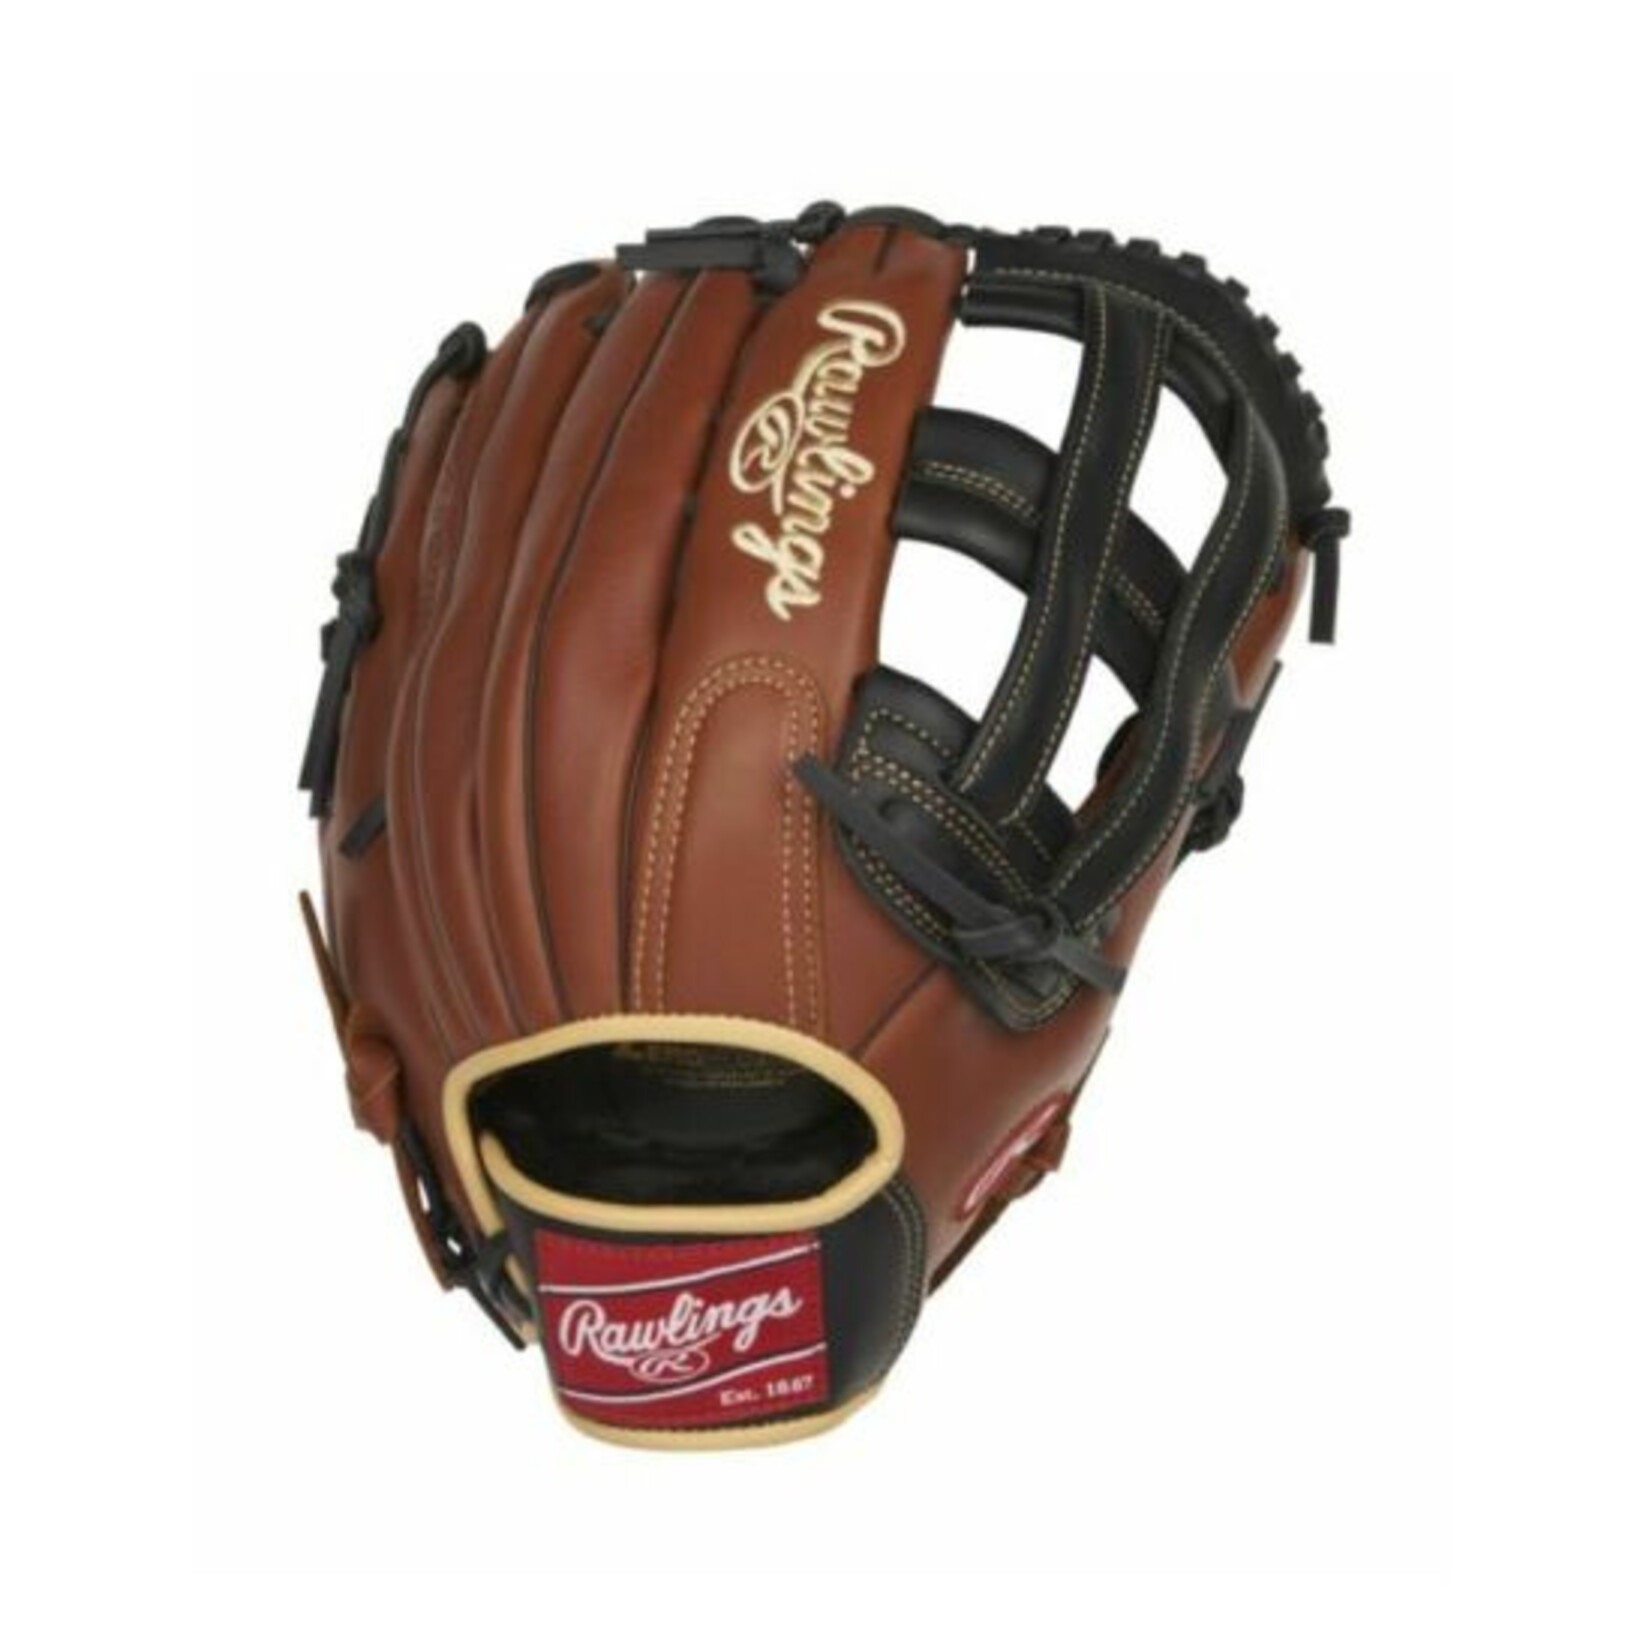 Rawlings Rawlings Sandlot - Baseball Glove